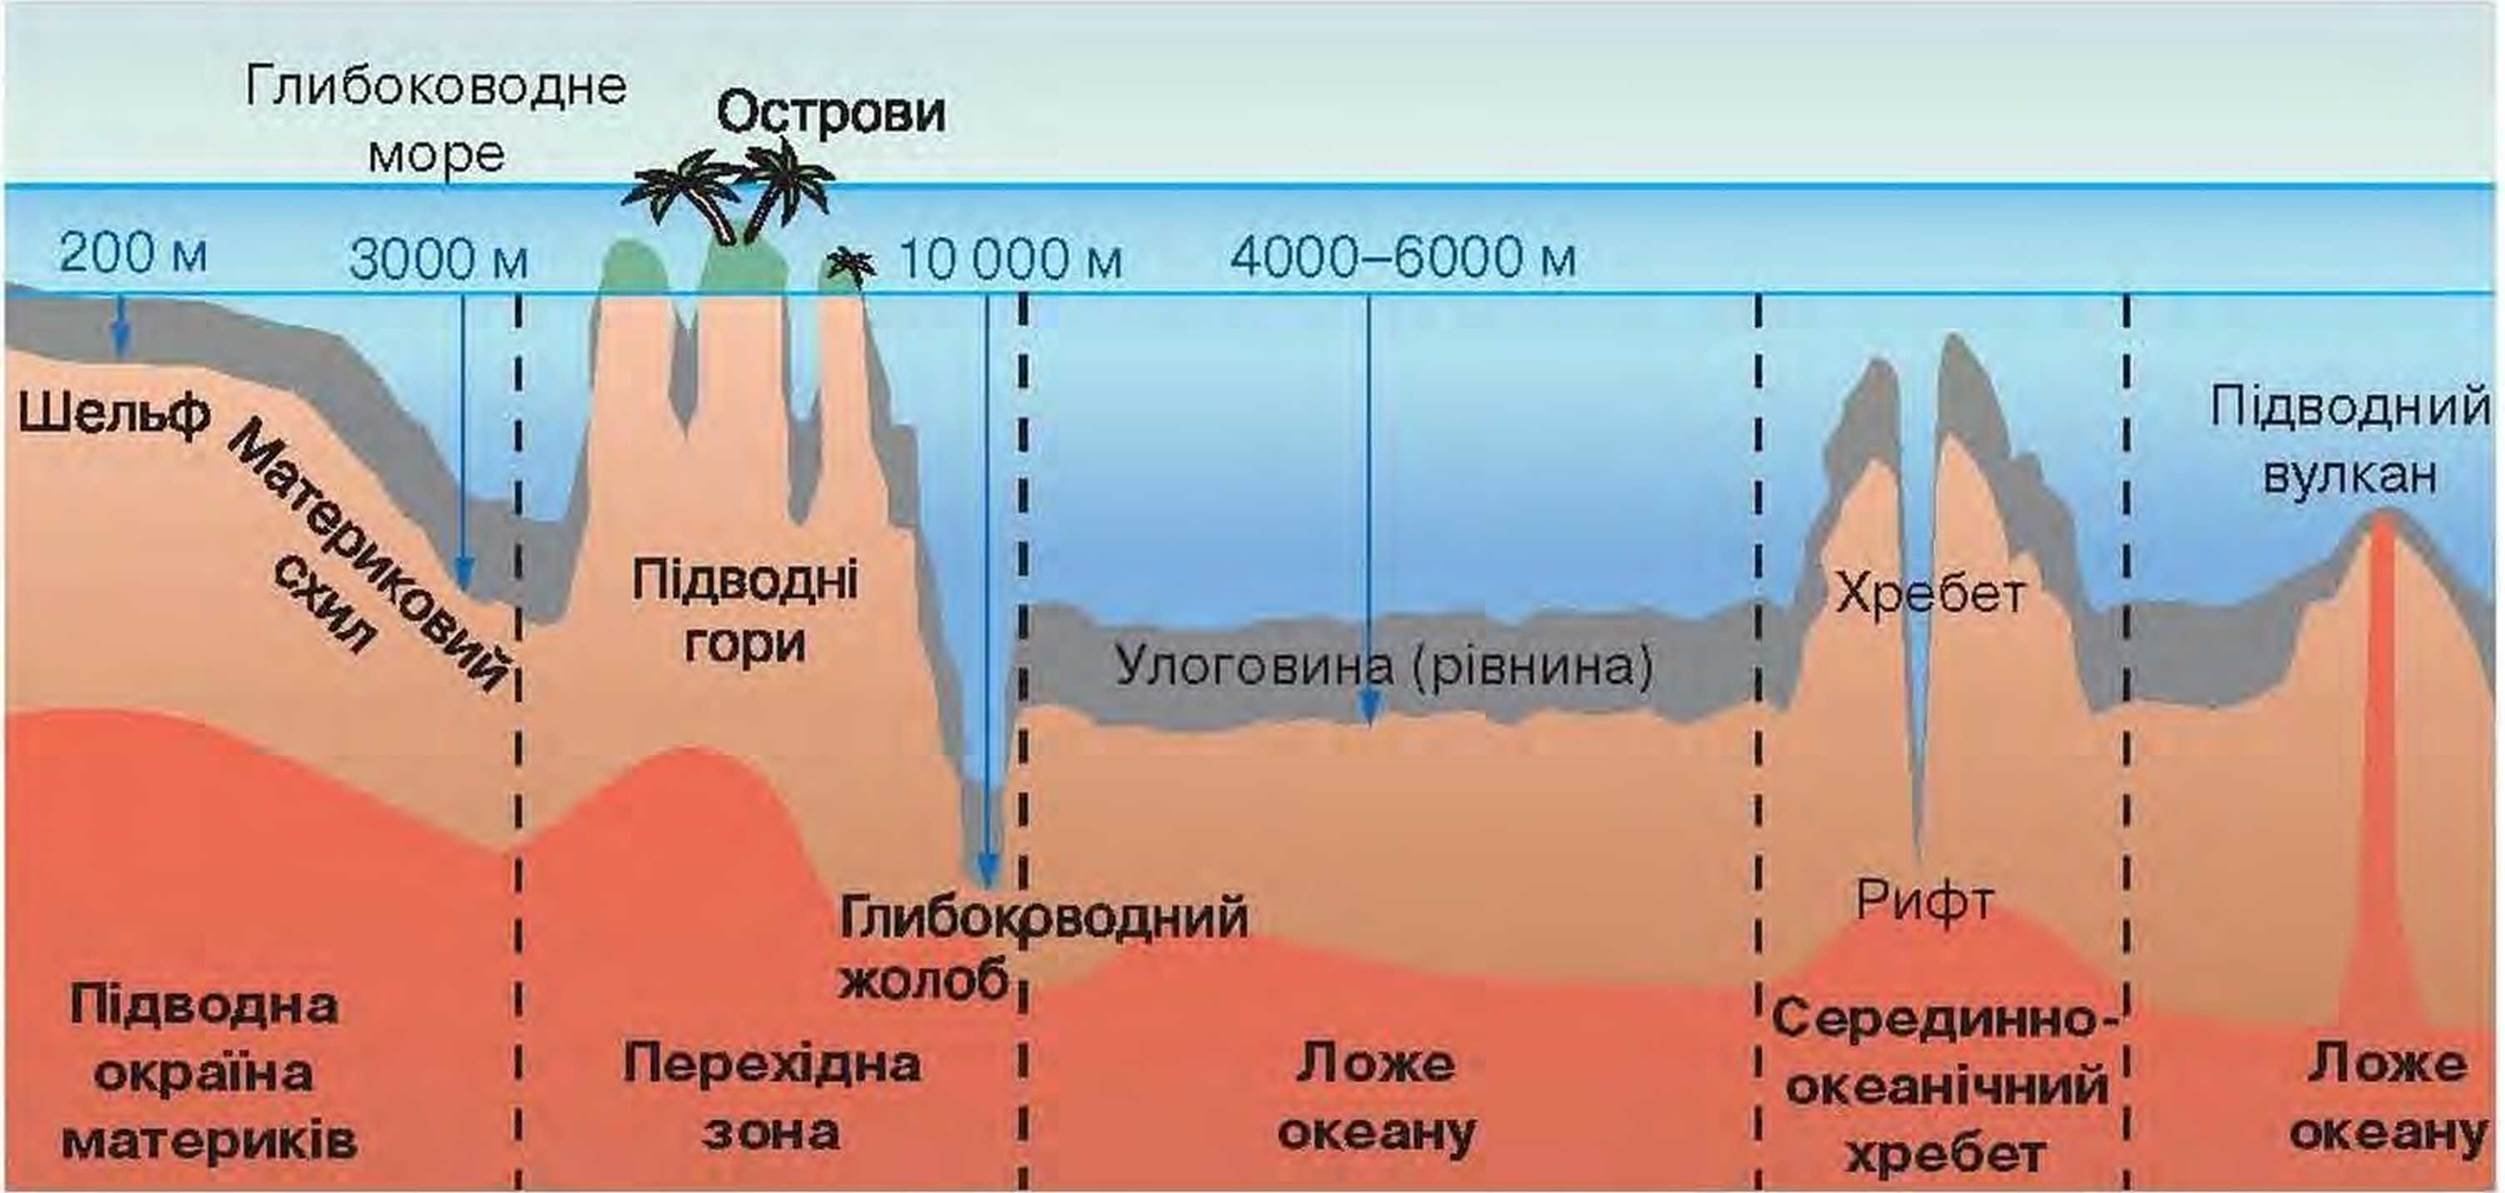 Особенности дна океана